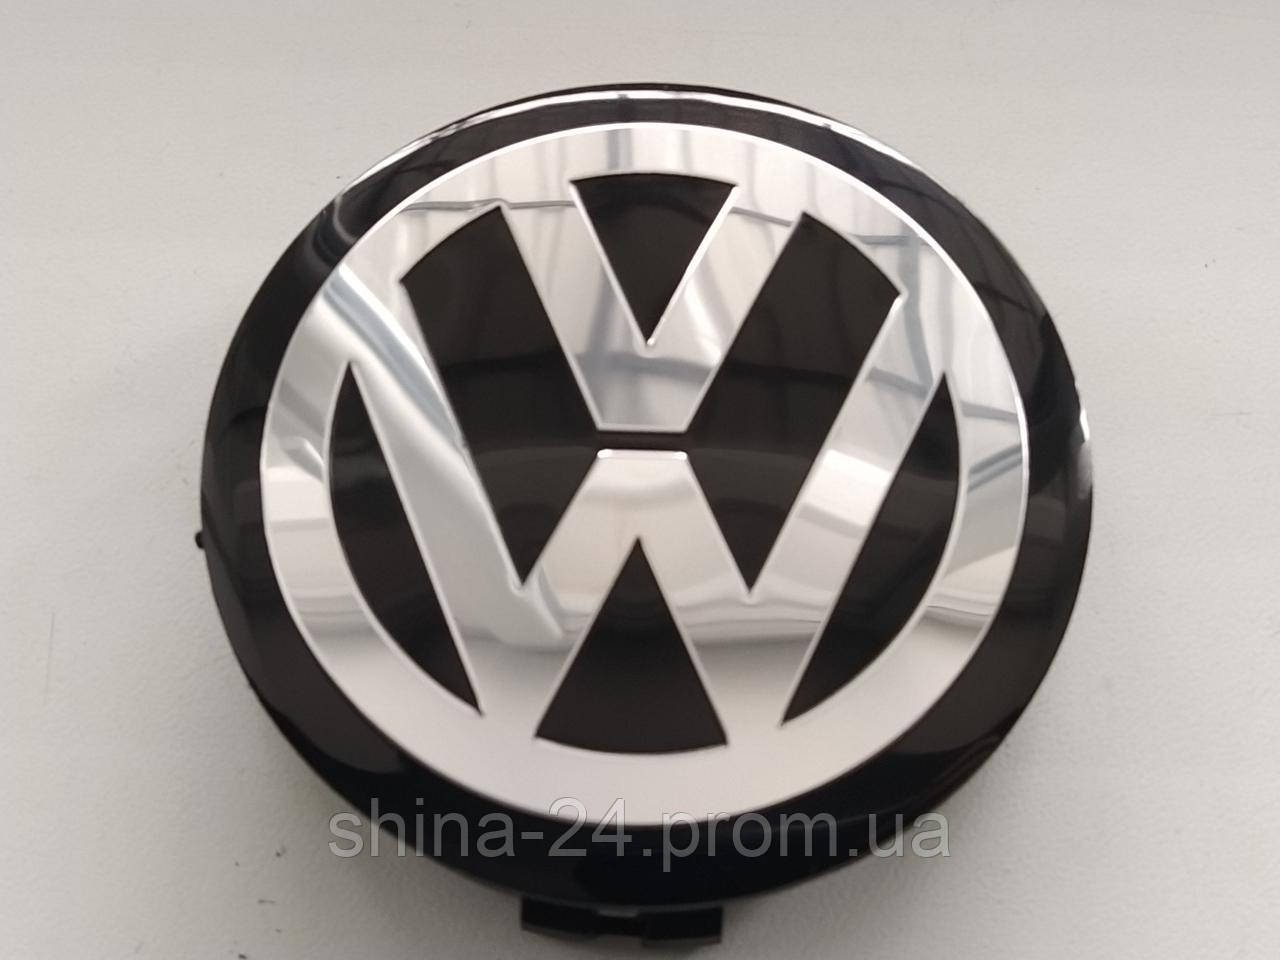 Ковпачки Volkswagen 75/70/15 мм. У диски Mercedes-Benz чорна основа